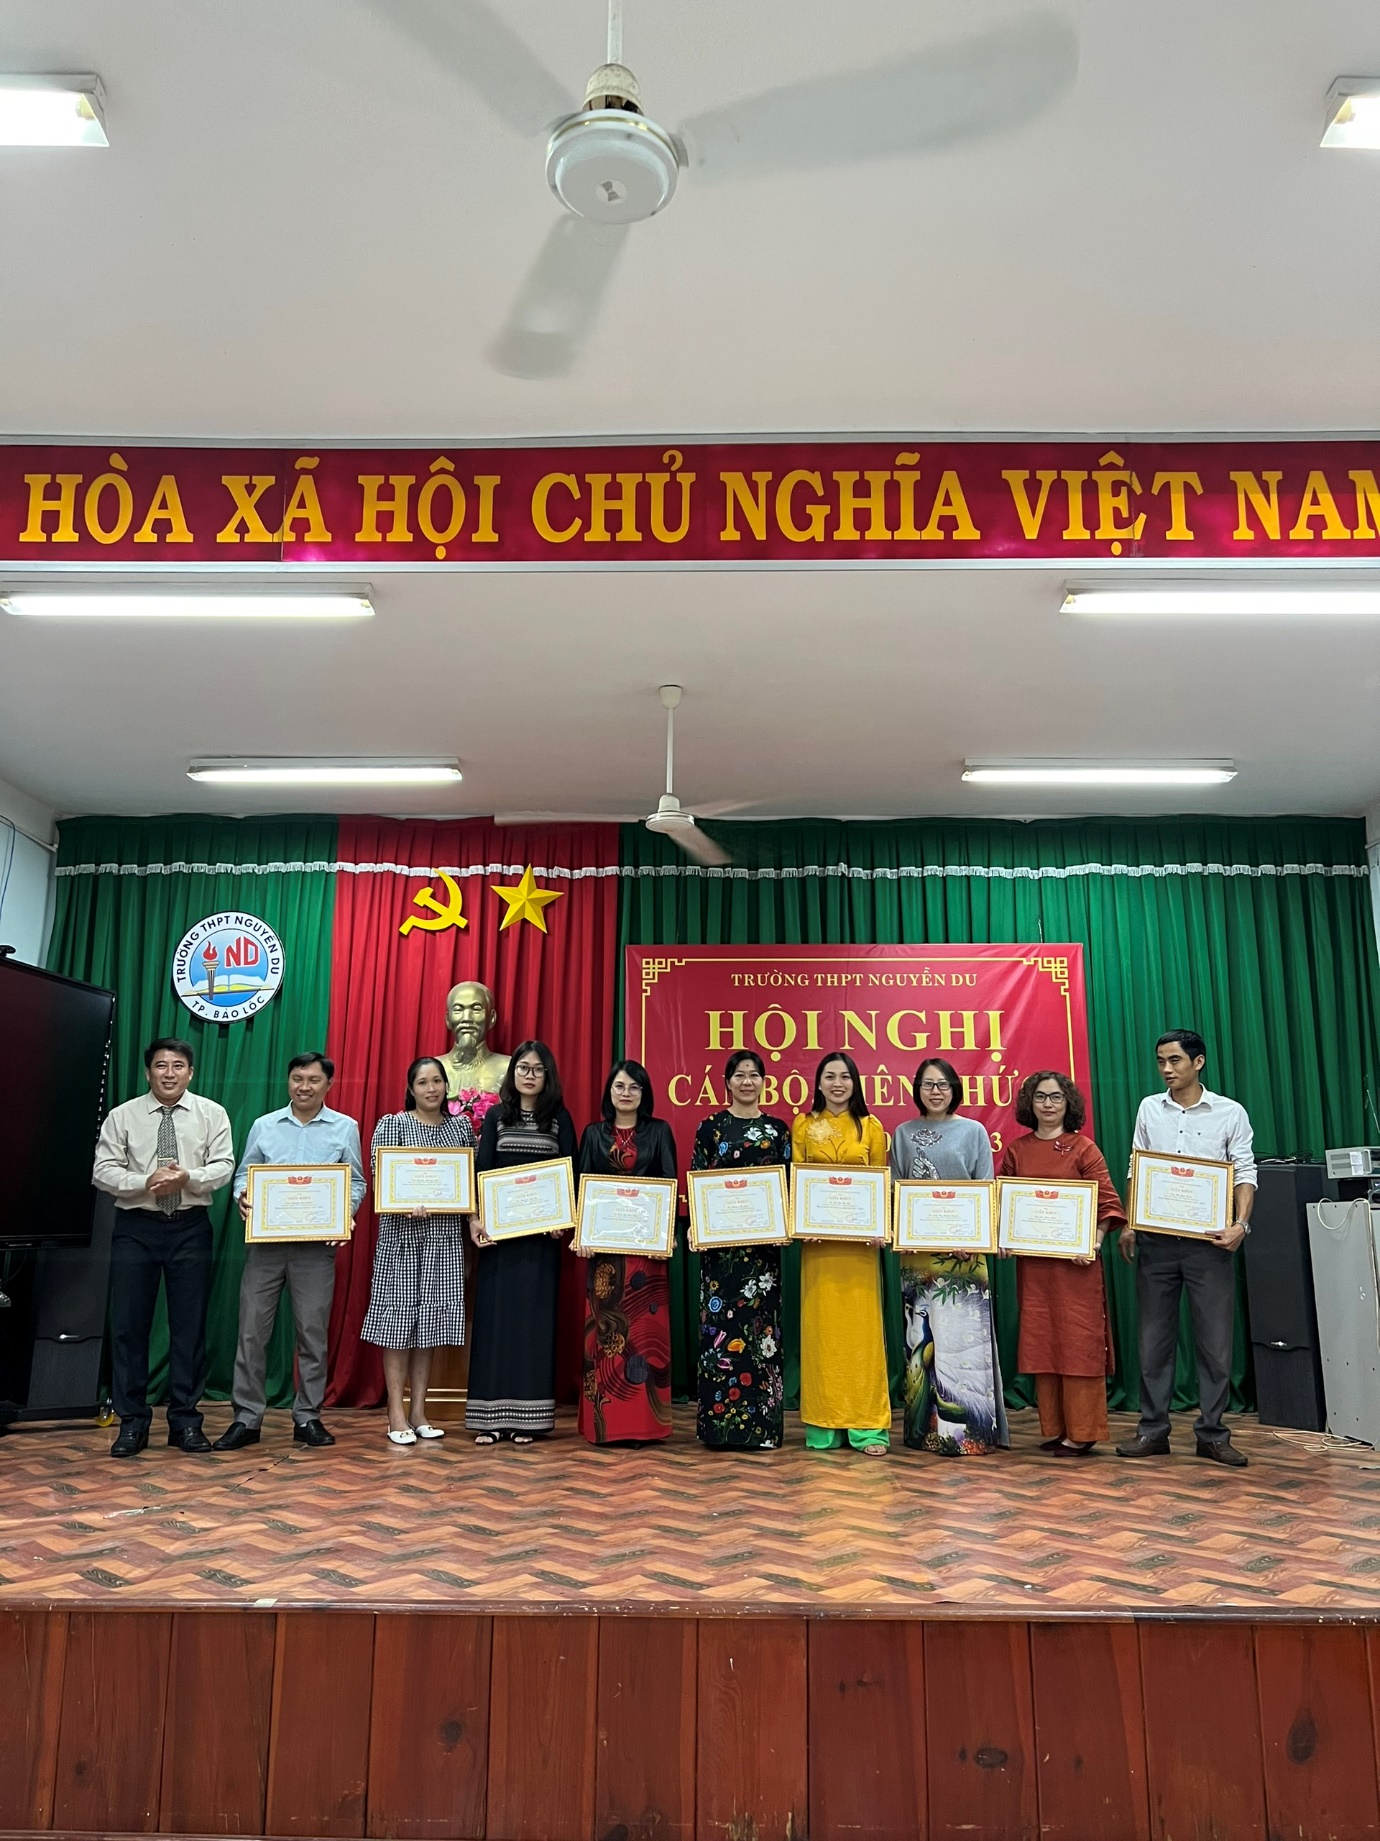 Trường THPT Nguyễn Du tổ chức Hội nghị cán bộ, viên chức năm học 2022 – 2023